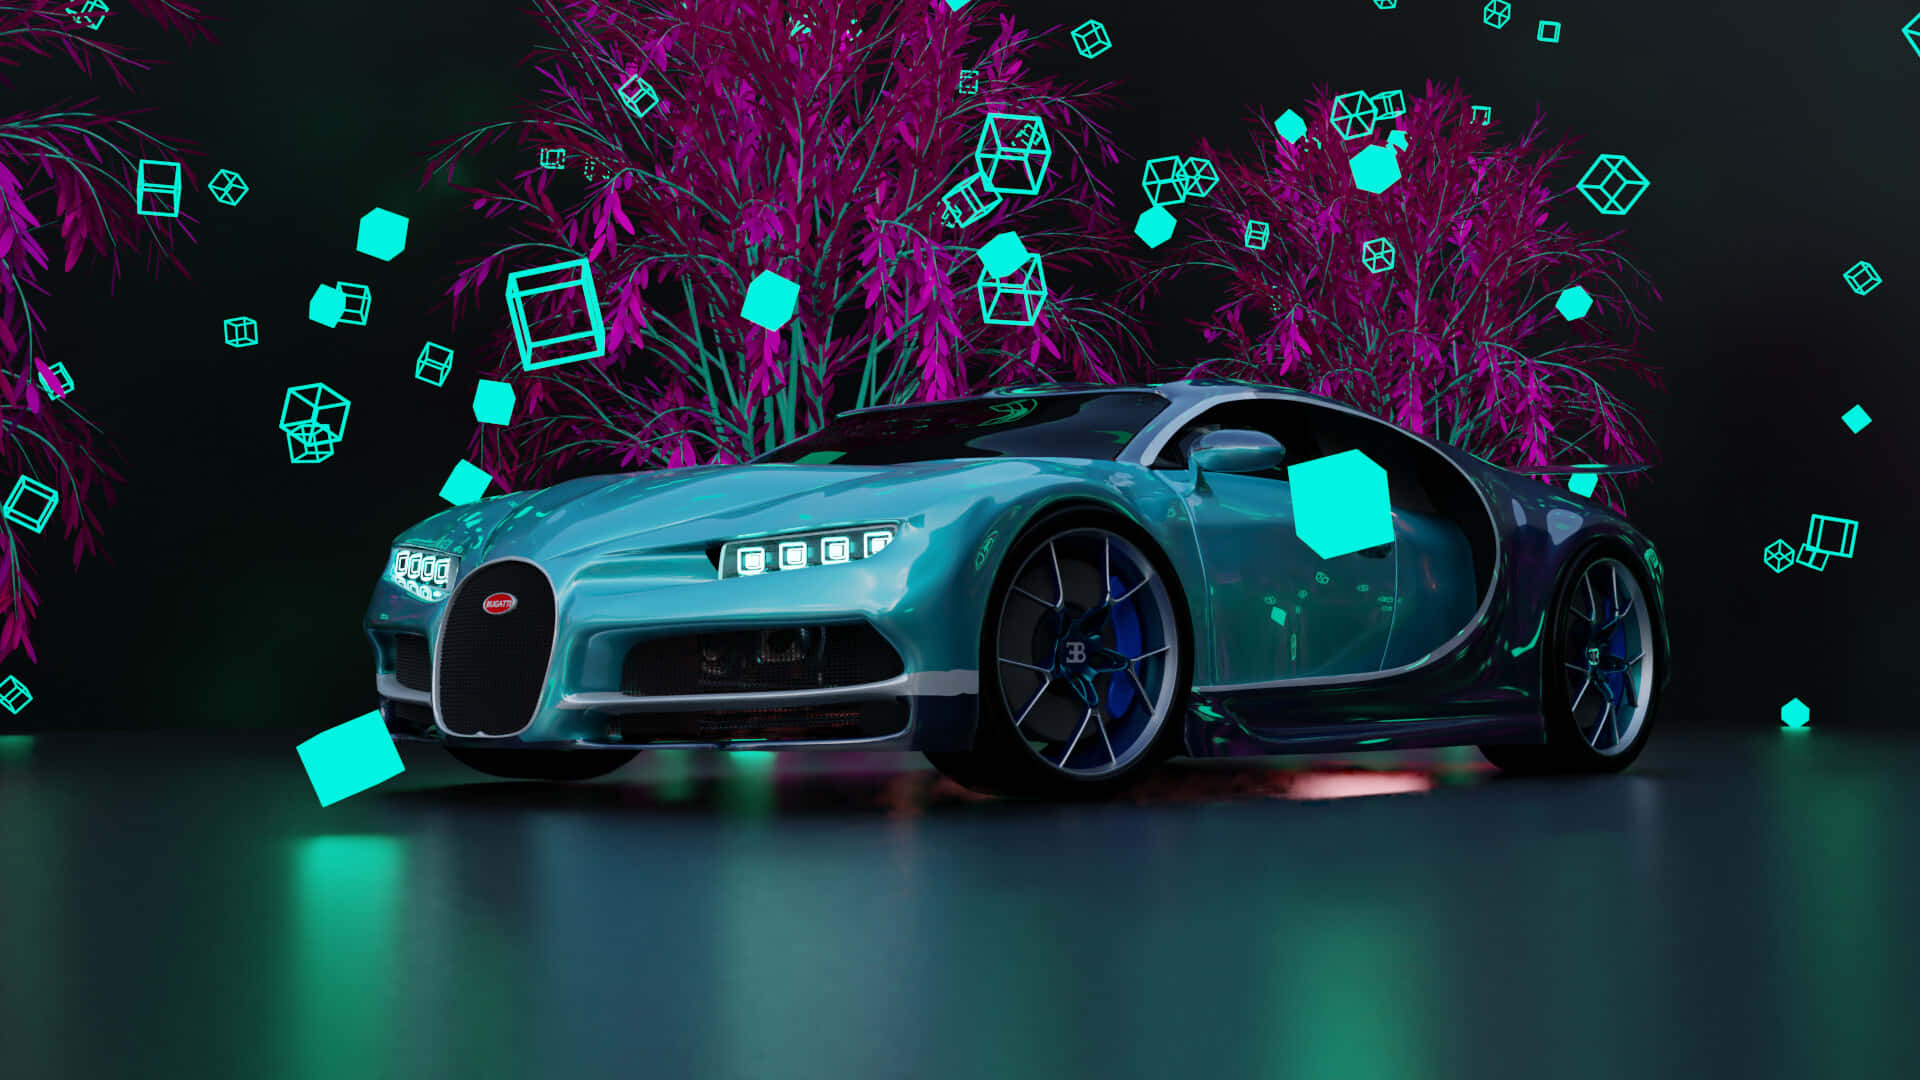 Låsupp Din Gudomliga Hastighet Med Den Neonfärgade Bugattin Som Bakgrundsbild På Din Dator Eller Mobil. Wallpaper